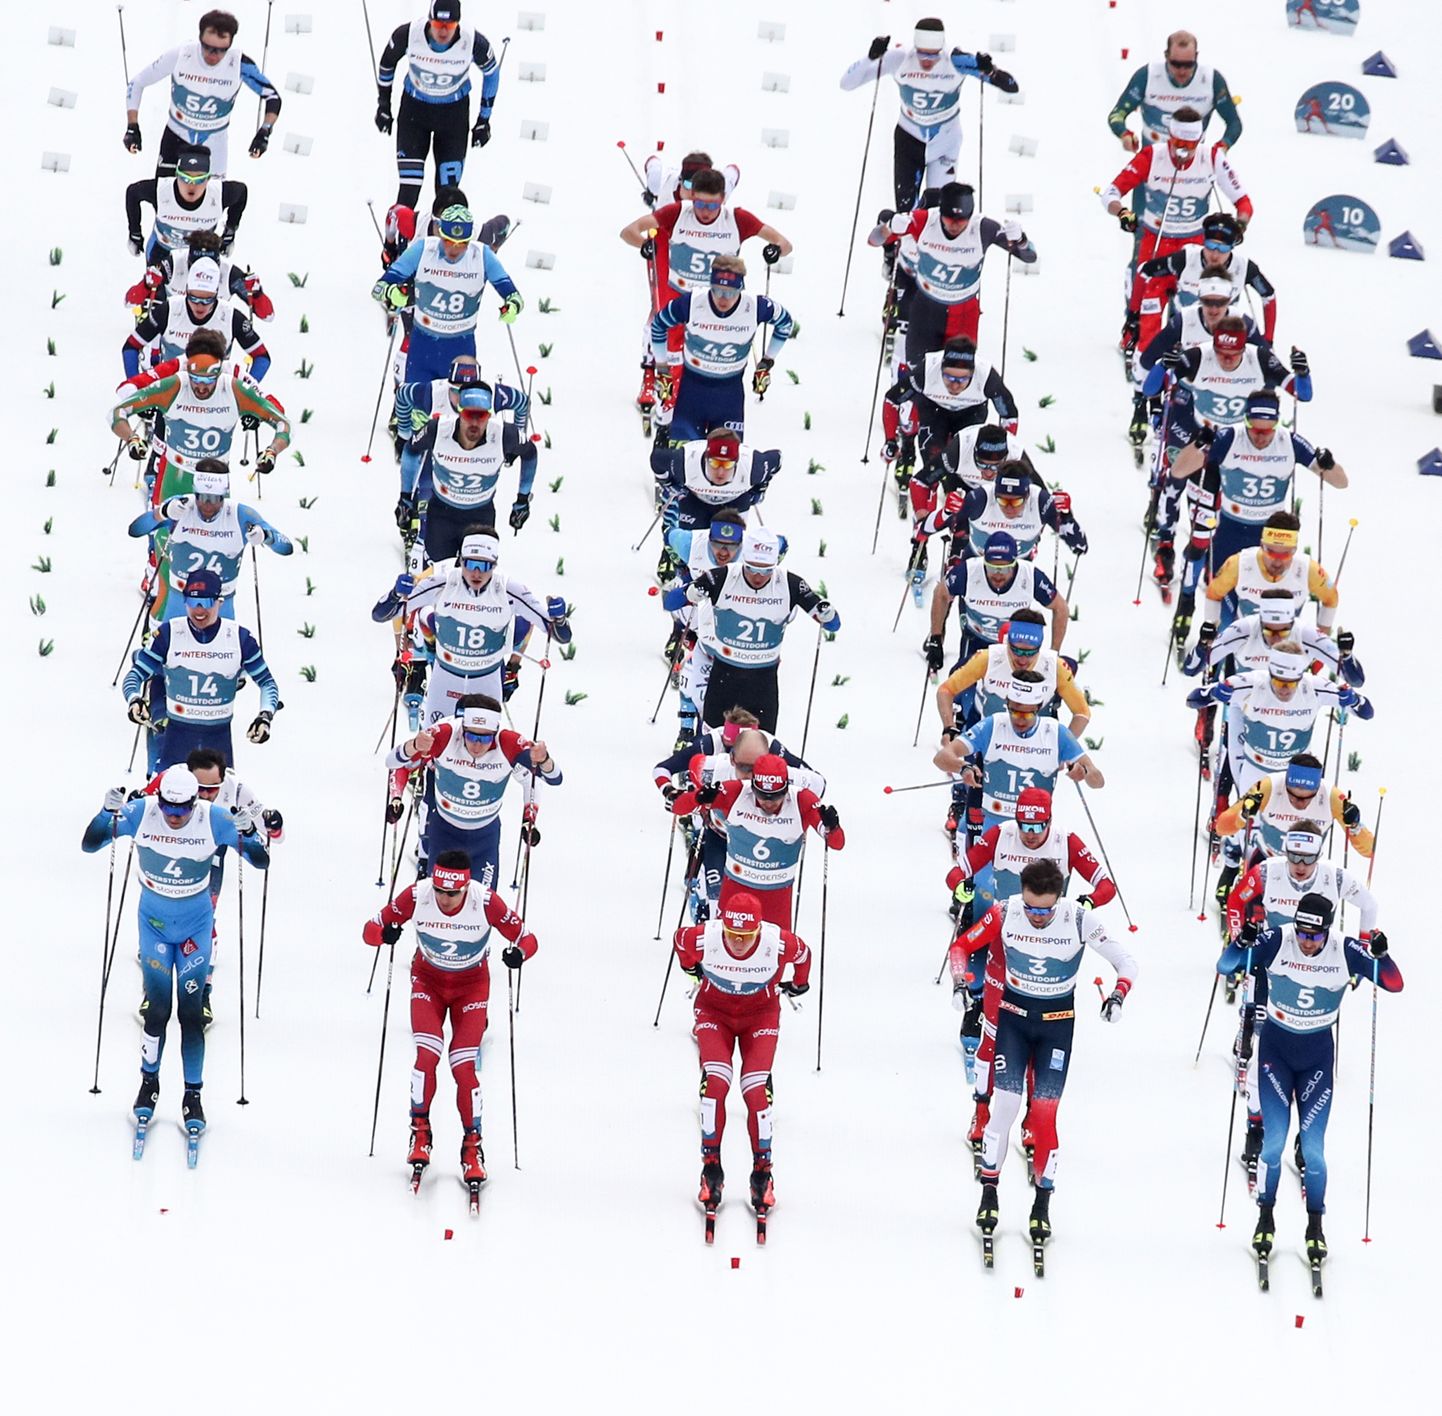 Meeste 50 kilomeetri maraton Oberstdorfi MMil. Pilt on illustratiivne.